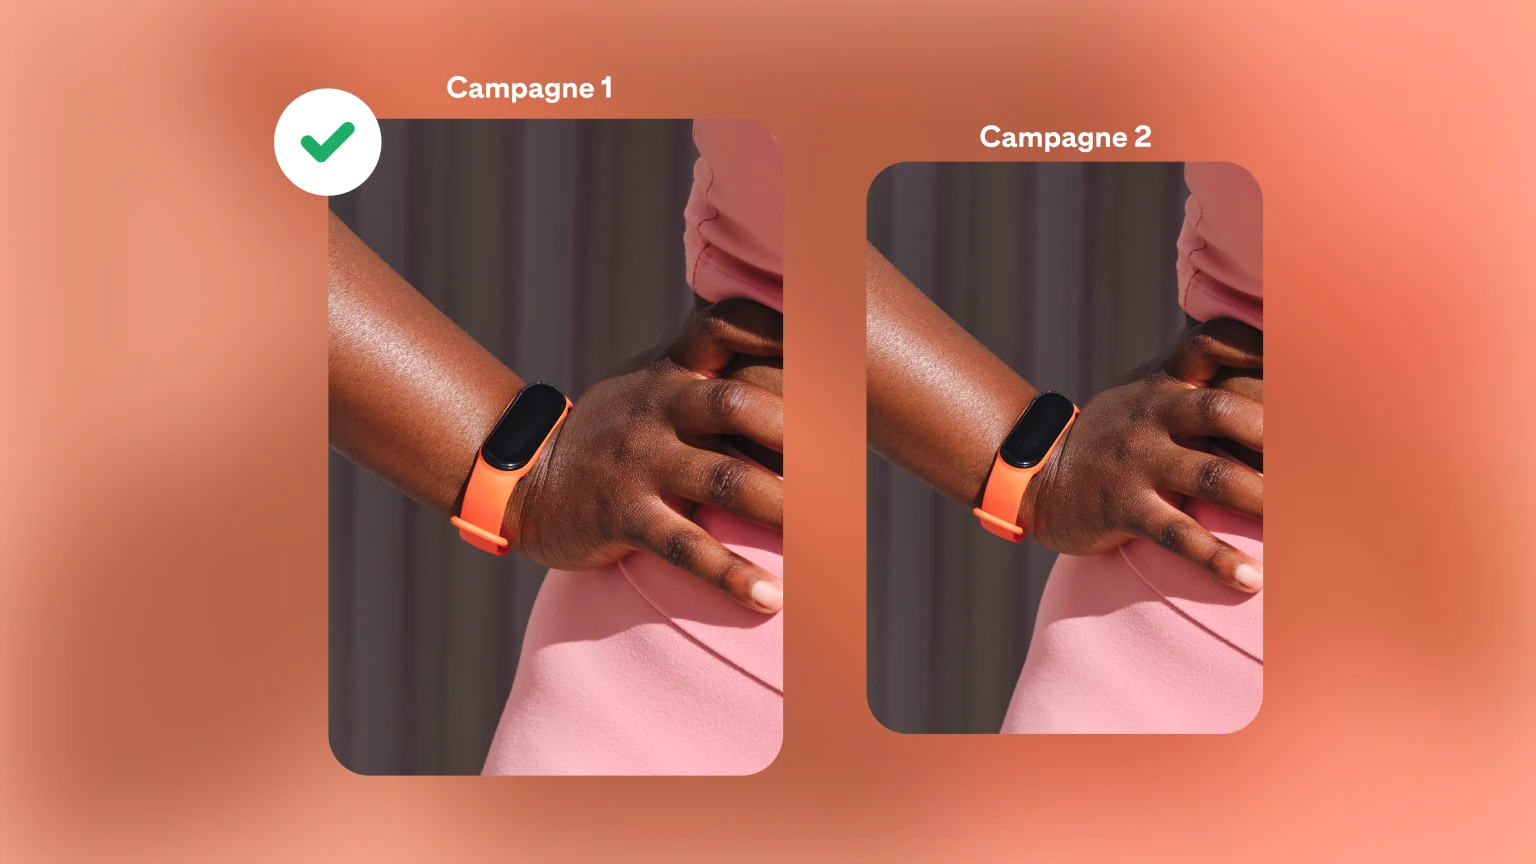 Deux campagnes pour des montres placées sur un fond orange vif. La campagne 1 est désignée comme la gagnante par une coche verte.